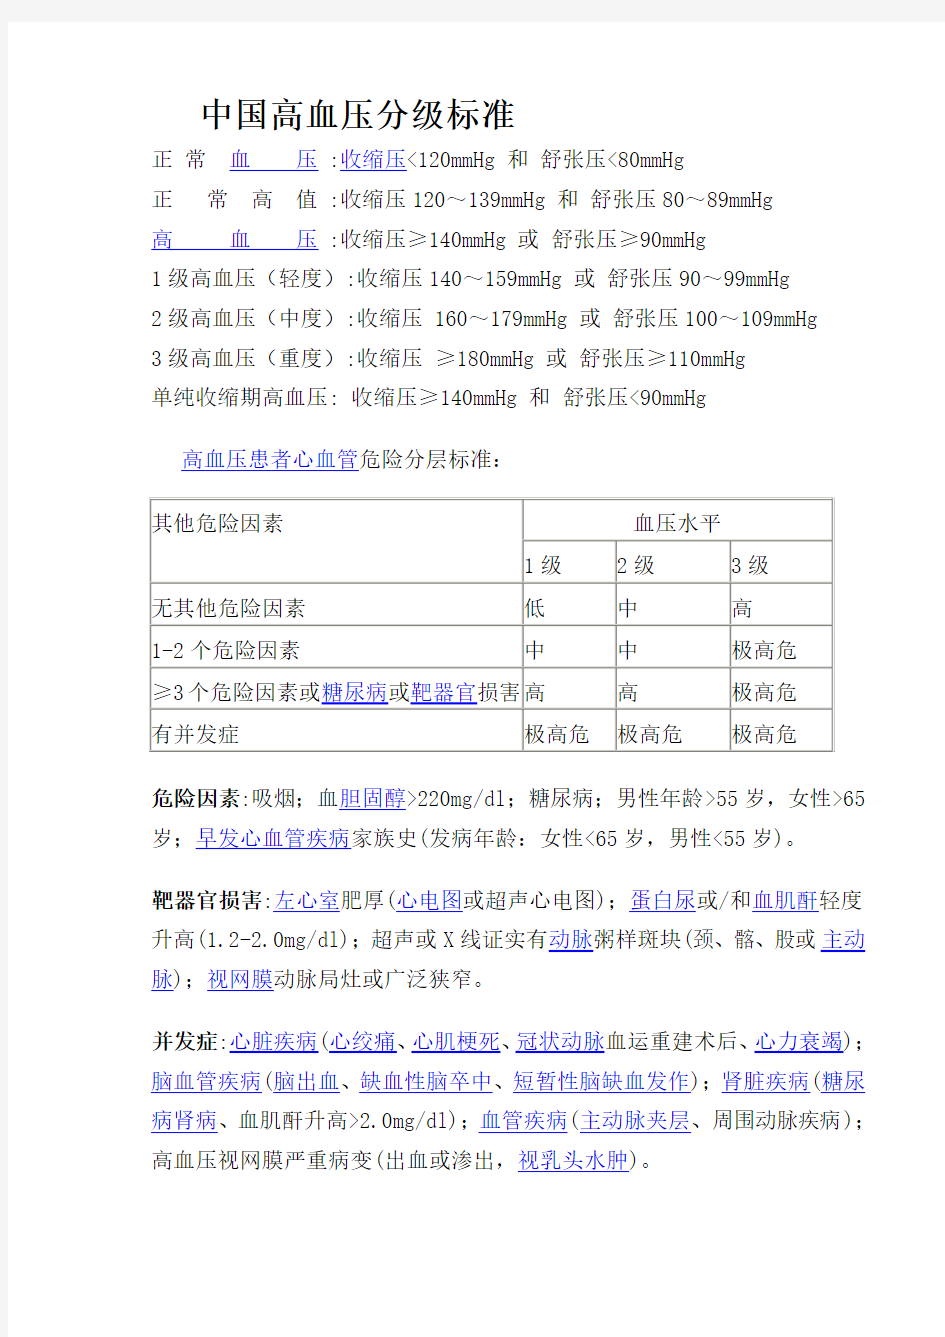 中国高血压分级标准 2